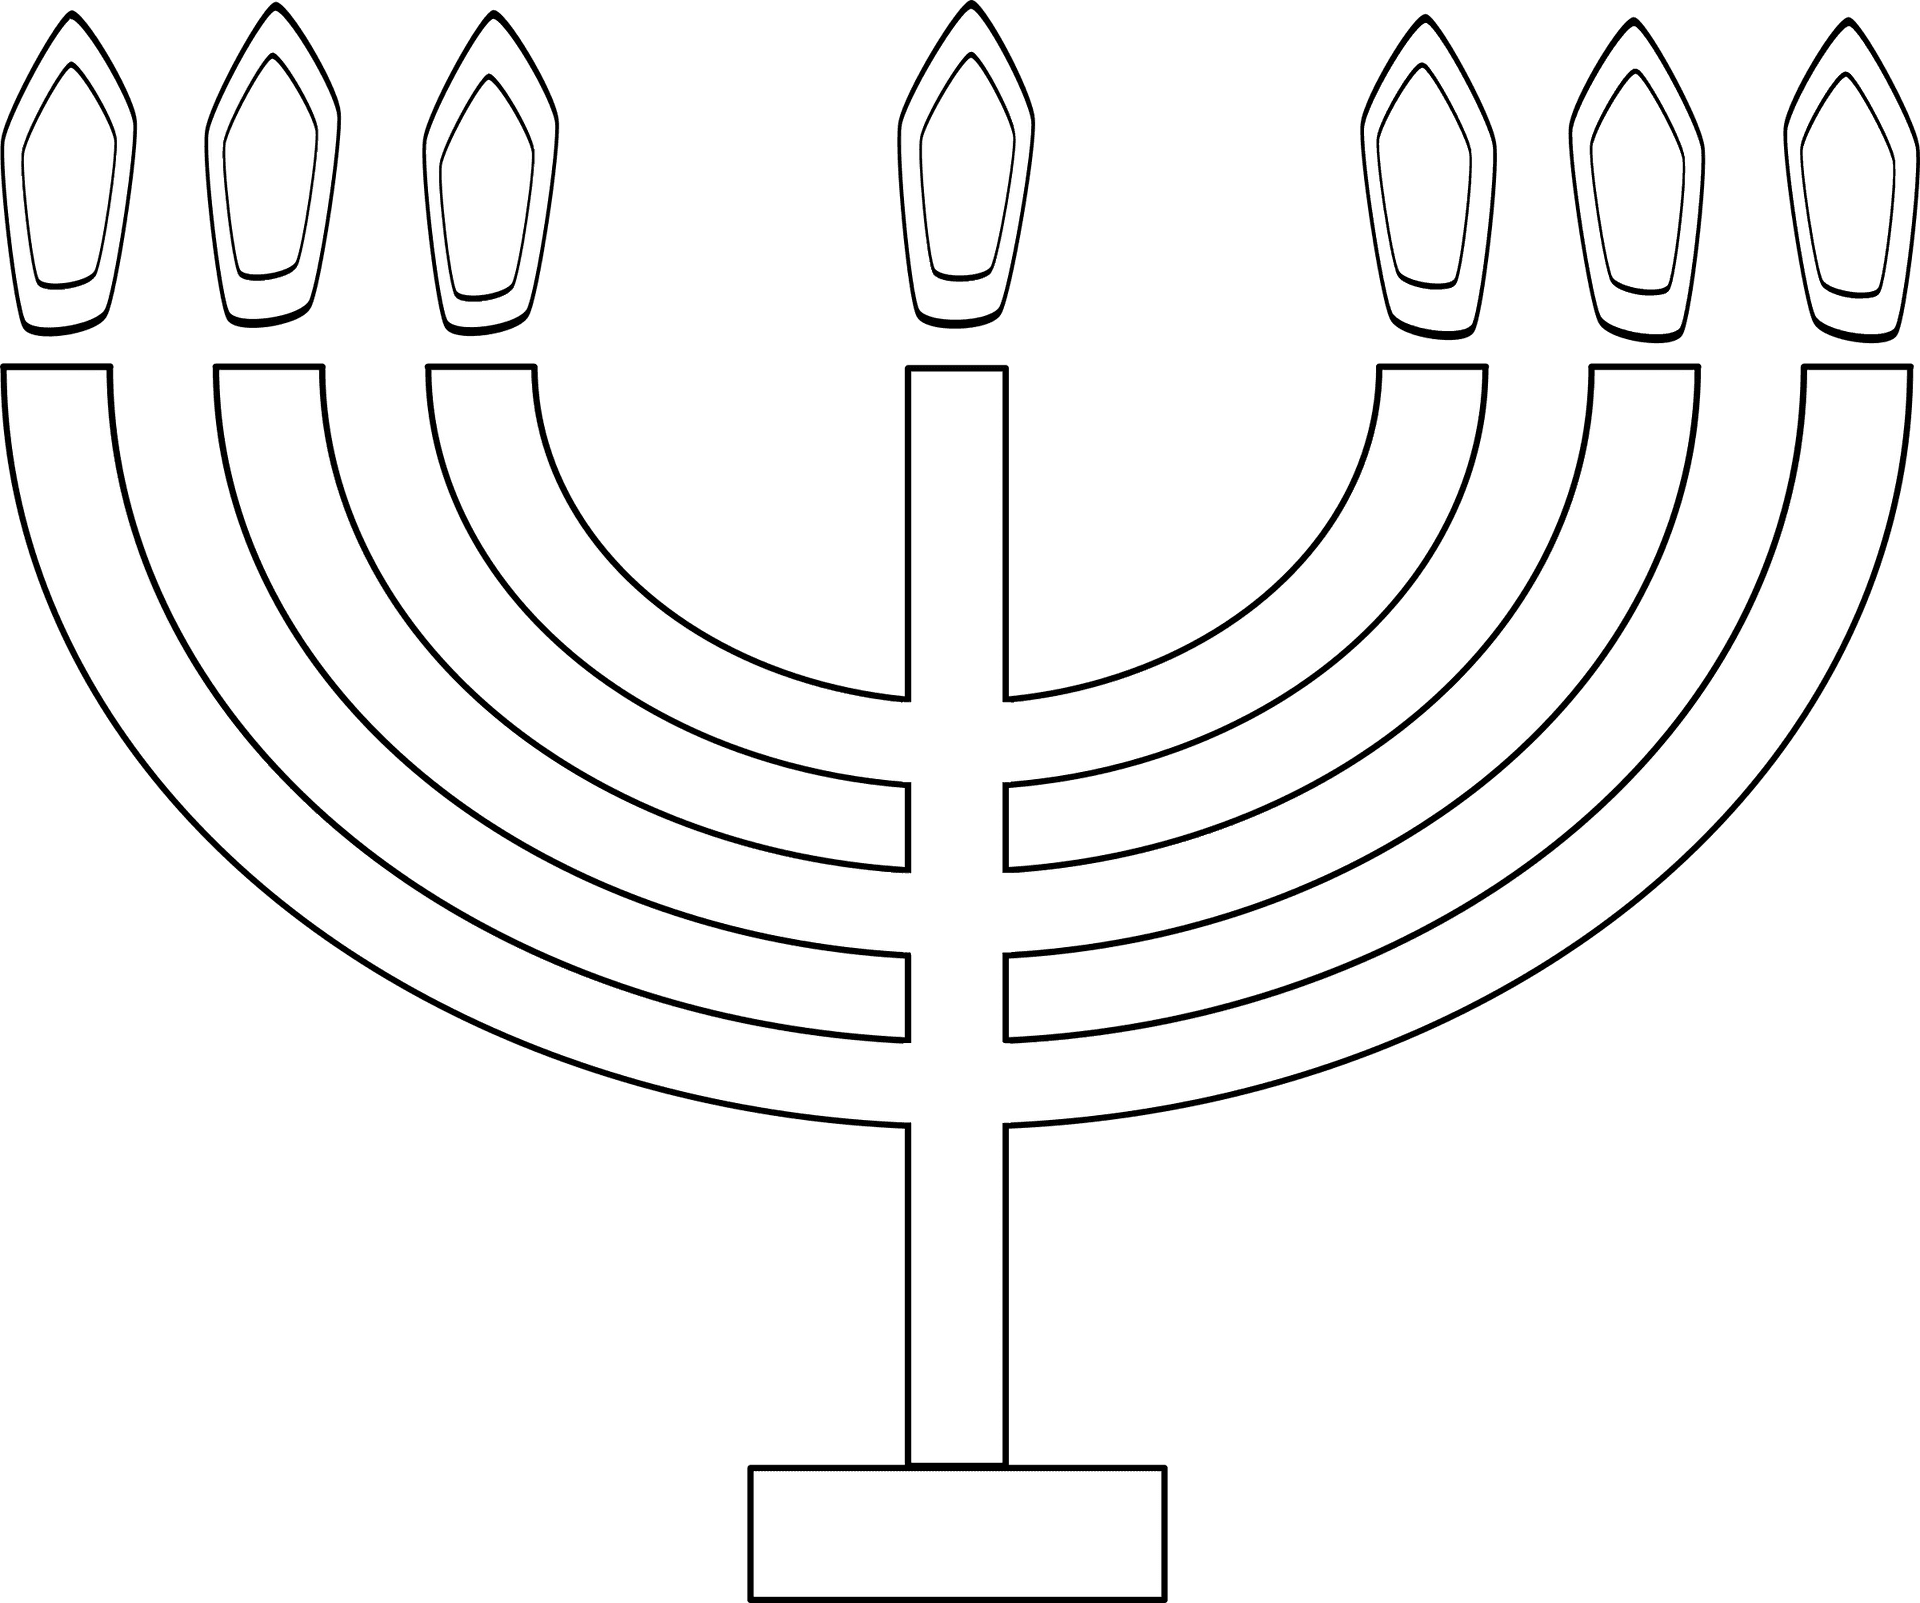 Hanukkah Menorah Illustration PNG image